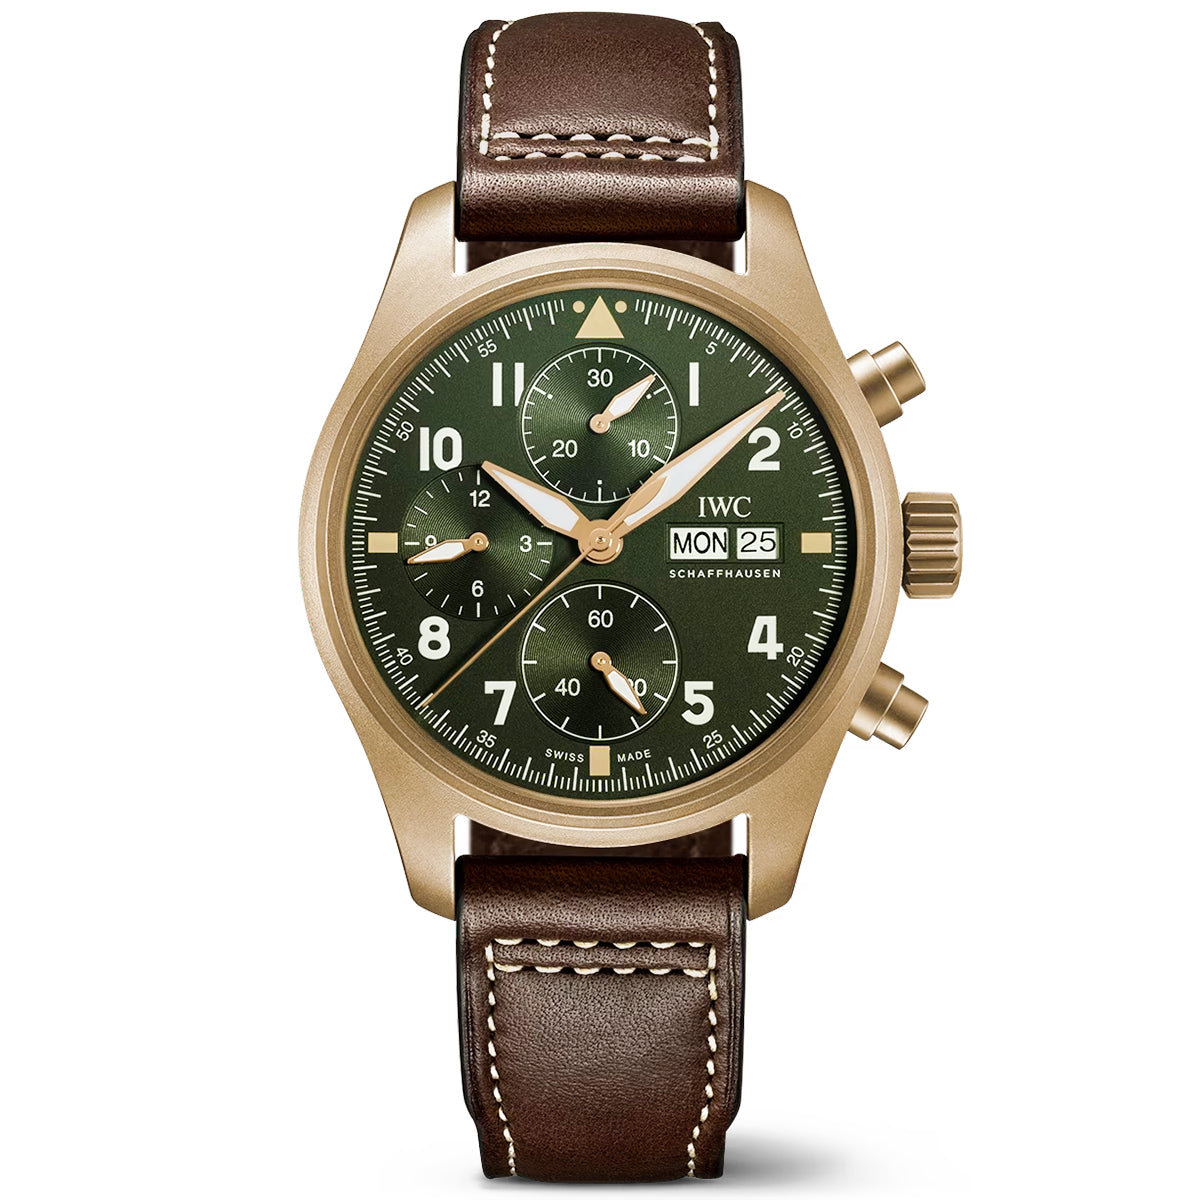 Pilot's Spitfire Bronze 41mm Green Dial Men's Chronograph Watch